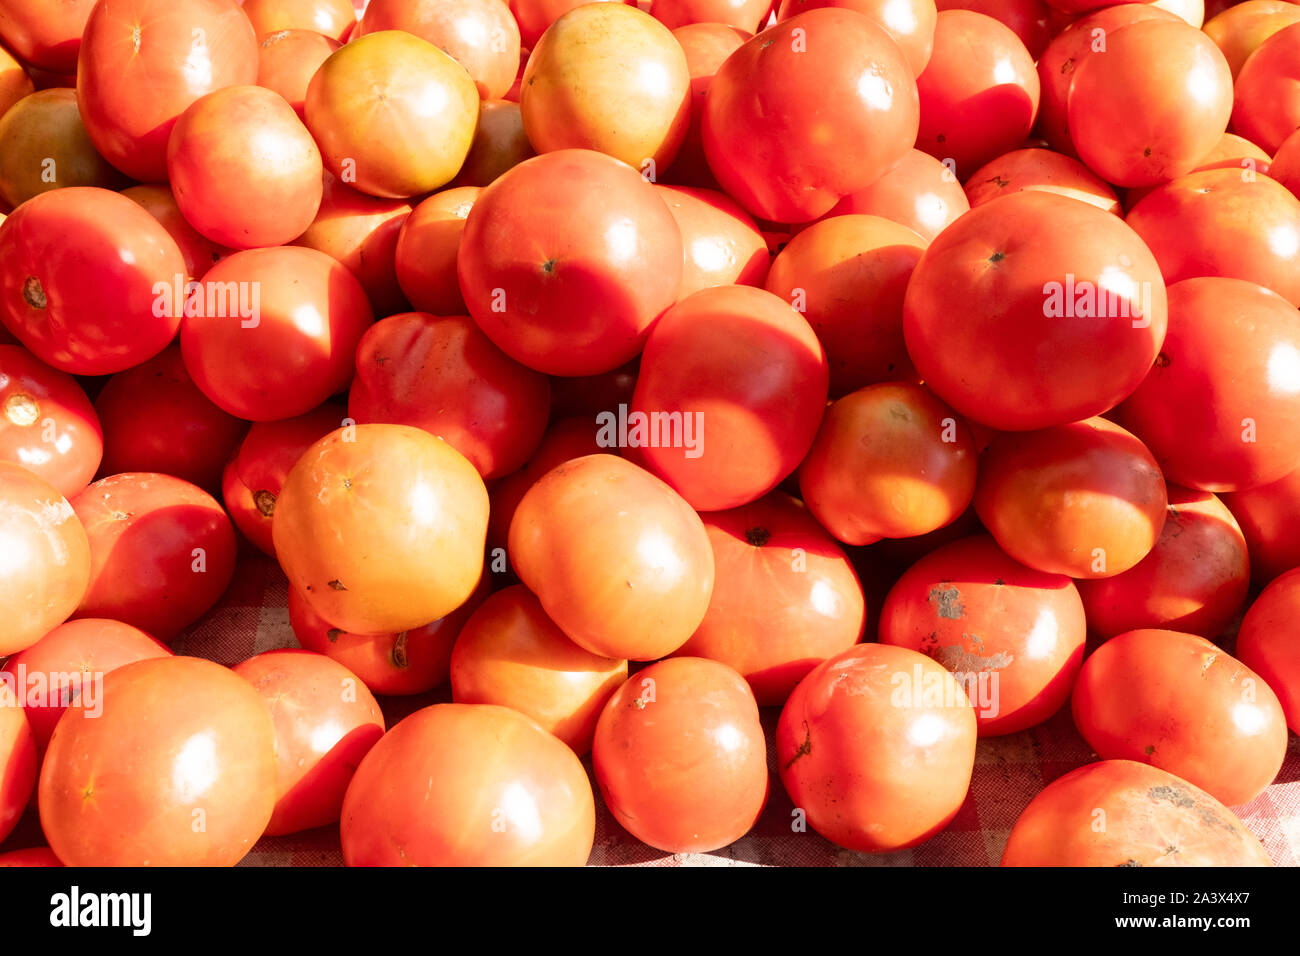 Un groupe de tomates rouges à l'ombre et au soleil, enroulés dans une ferme locale. Certains mûrs, certains ont été bannis, tous les fruits ou légumes copieux et sains Banque D'Images